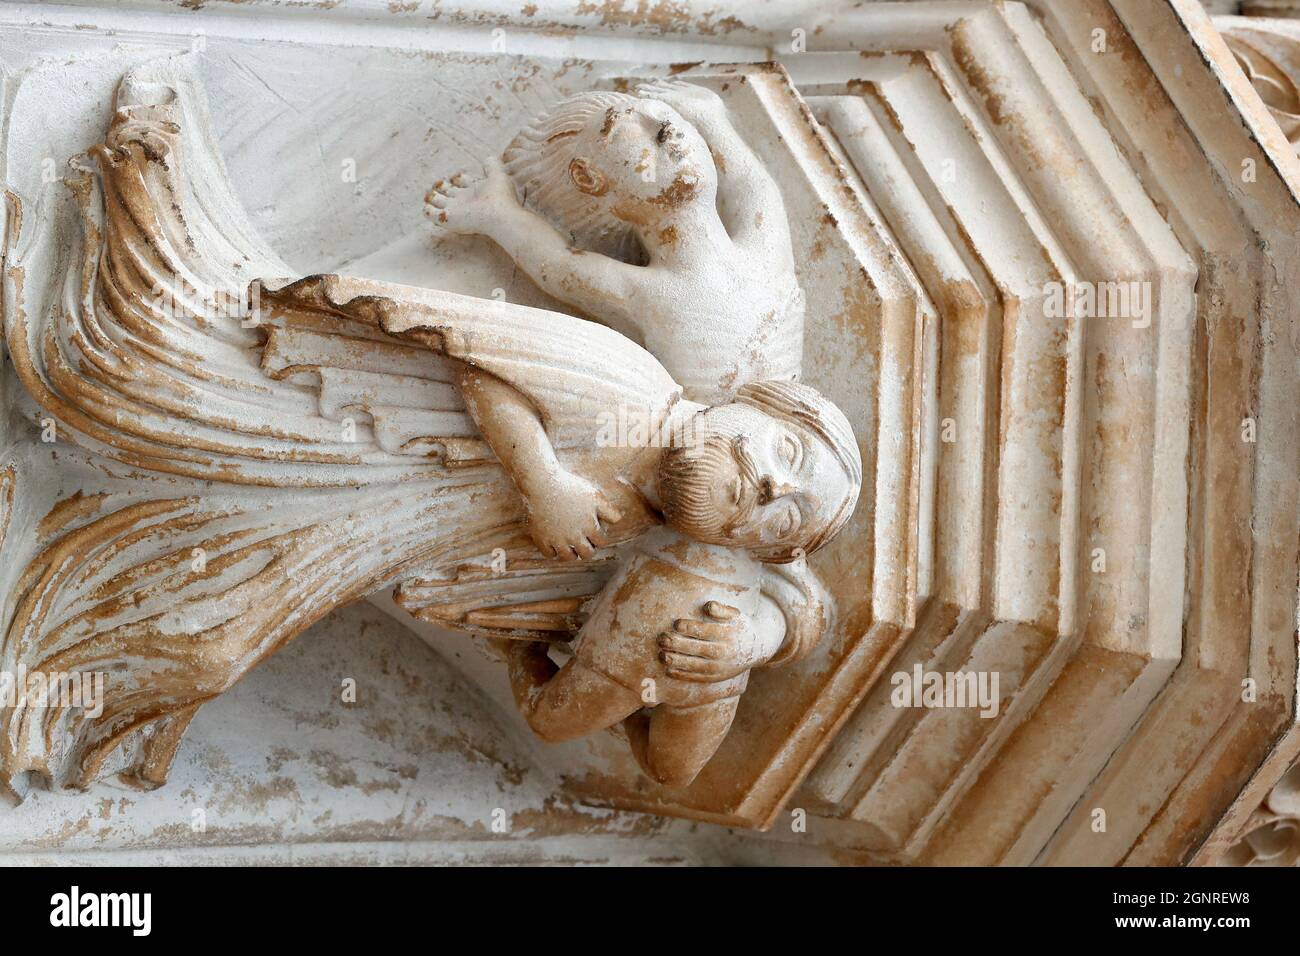 Portal occidental. Monasterio de Batalha. Arquitectura gótica tardía, mezclada con el estilo Manueline. Portal occidental. Portugal. Foto de stock